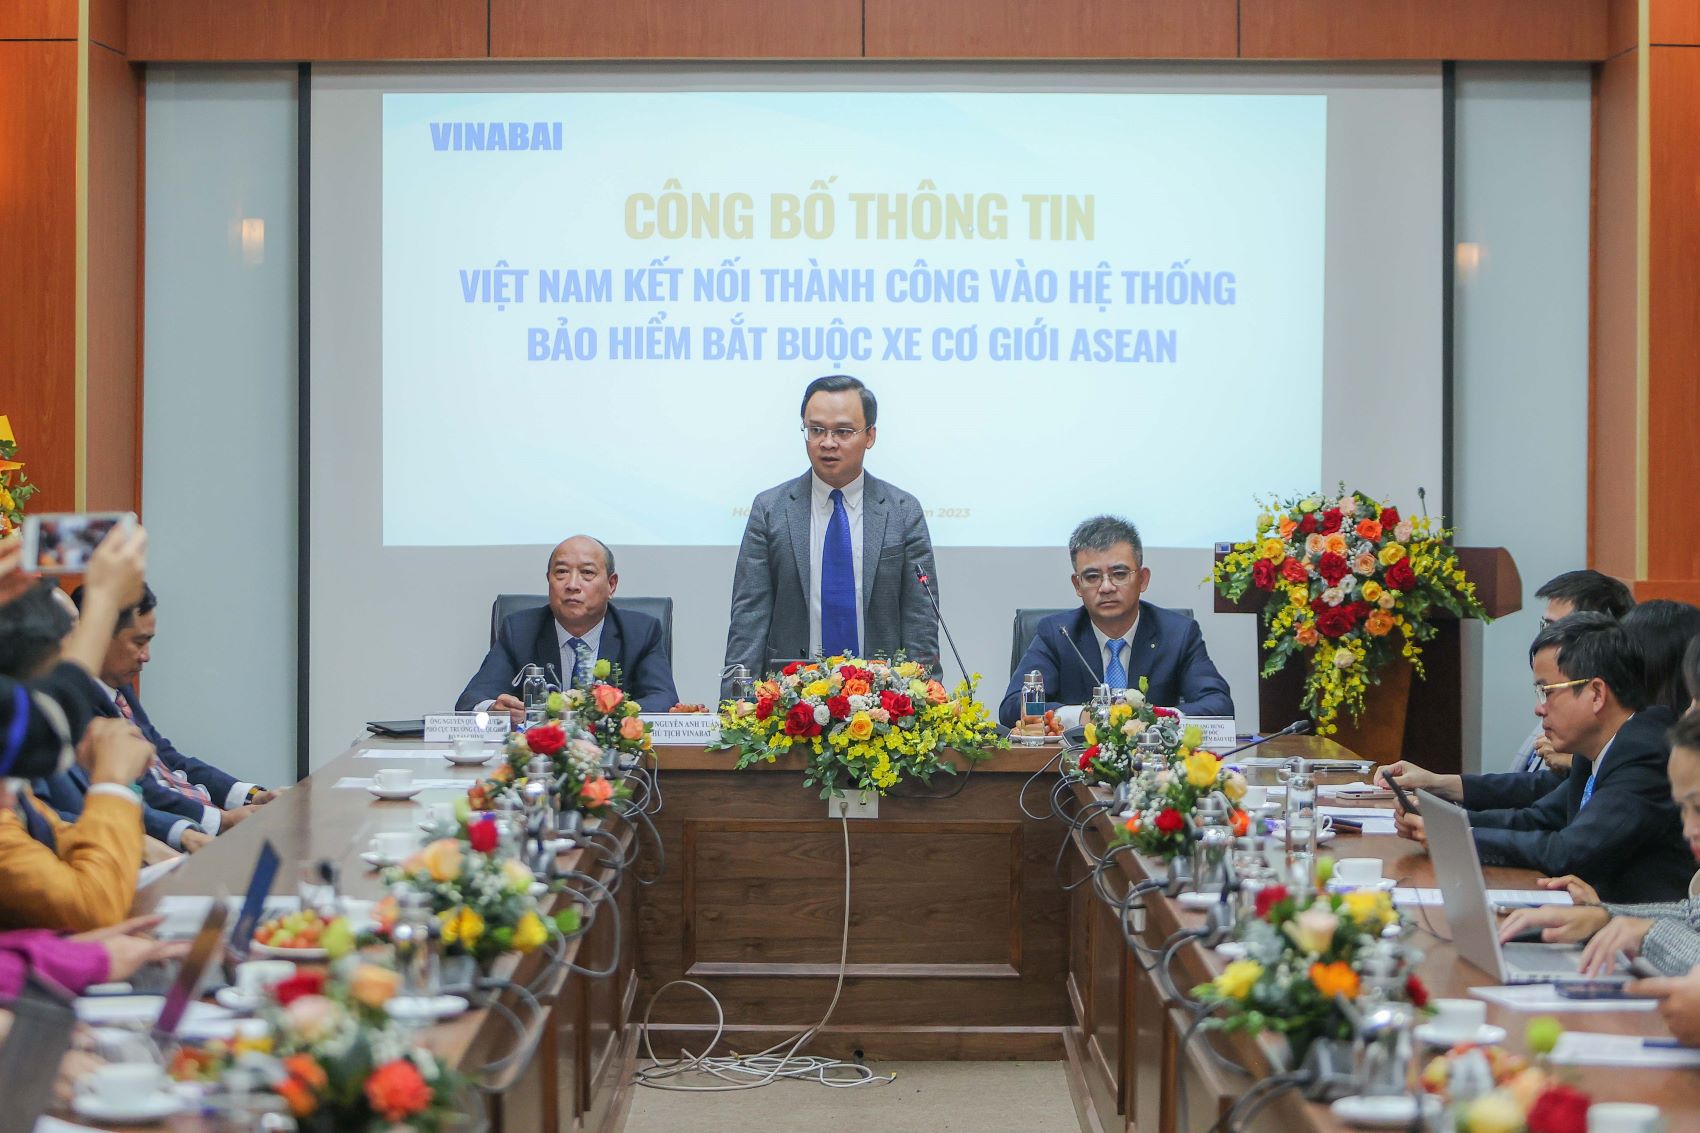 Việt Nam đã kết nối thành công vào hệ thống bảo hiểm bắt buộc xe cơ giới ASEAN